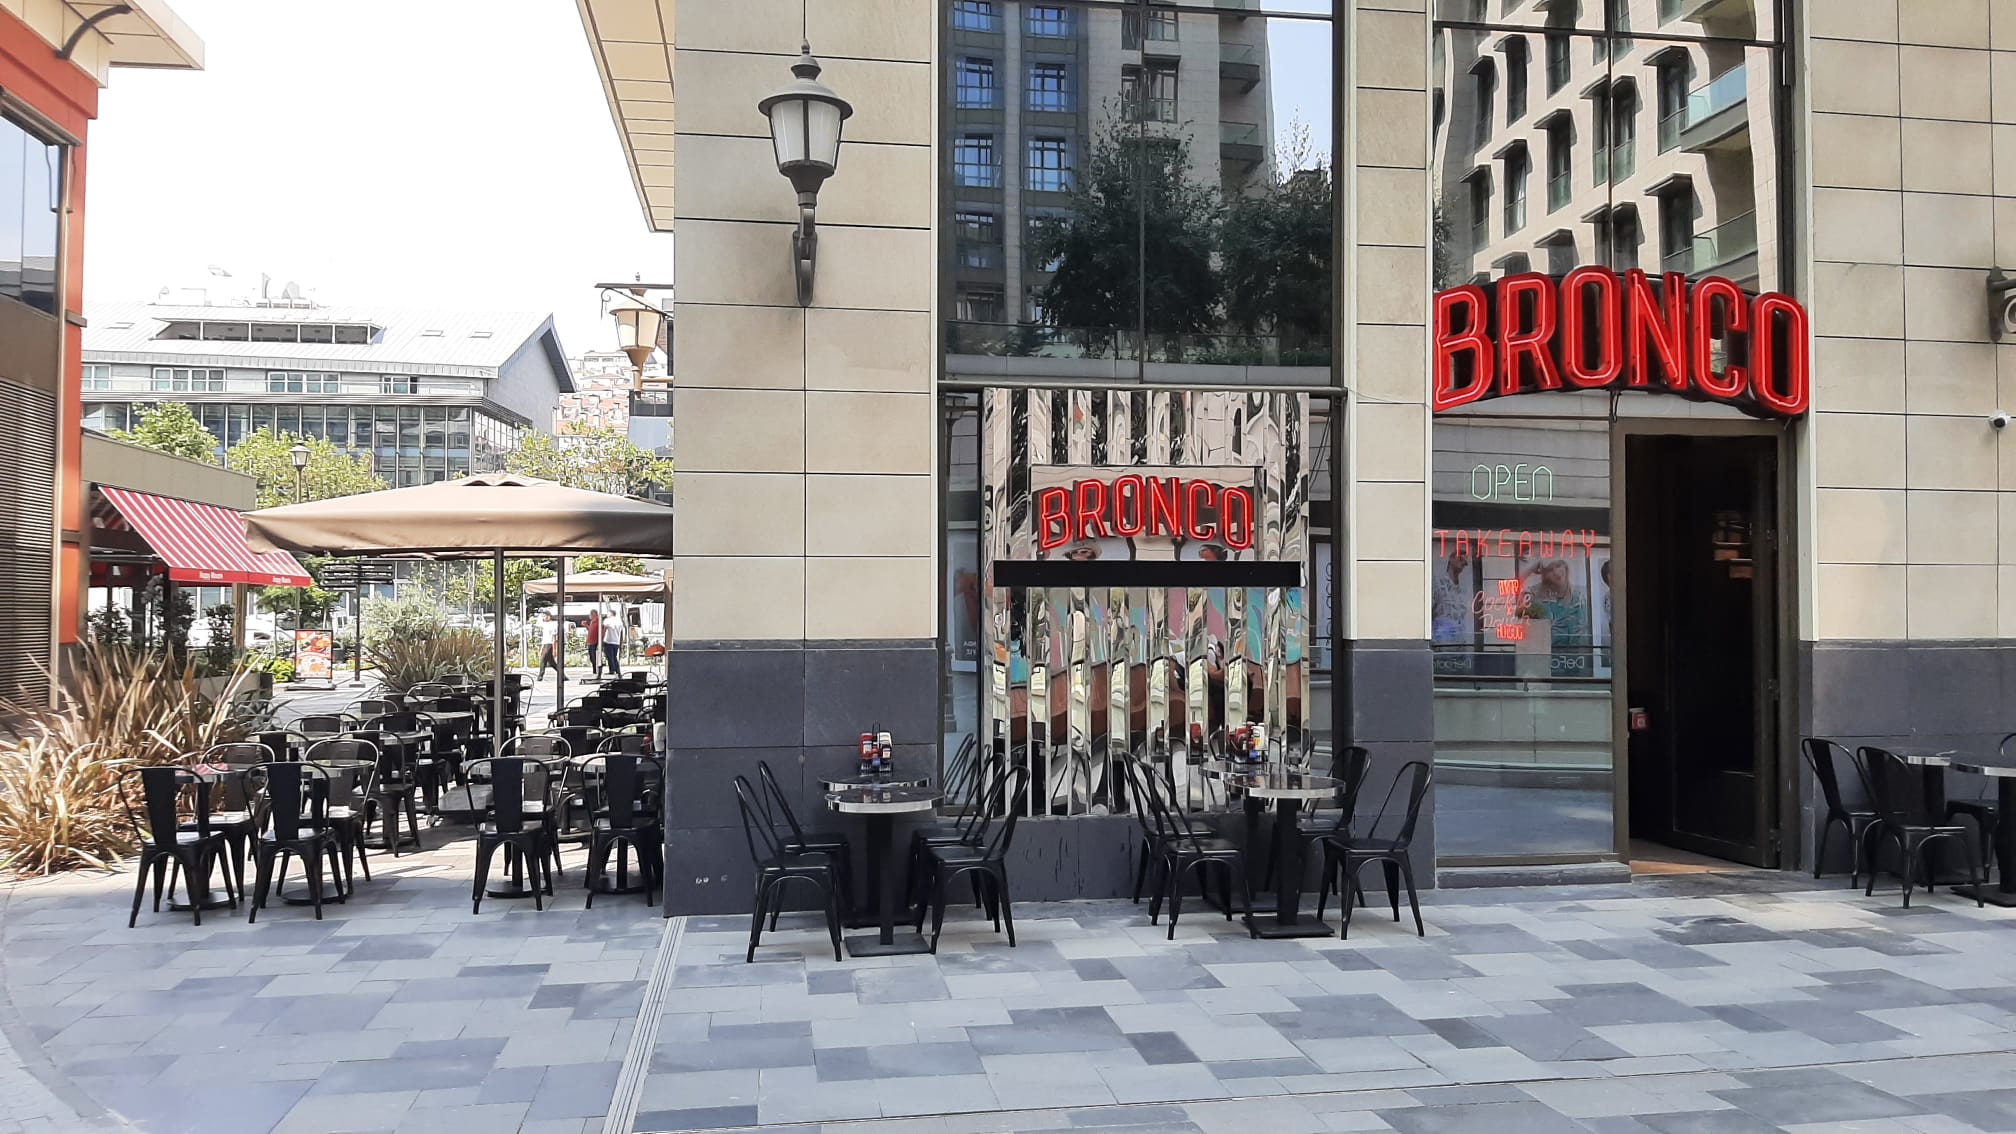 Bronco is opened at Piyalepaşa Çarşı Strip Mall